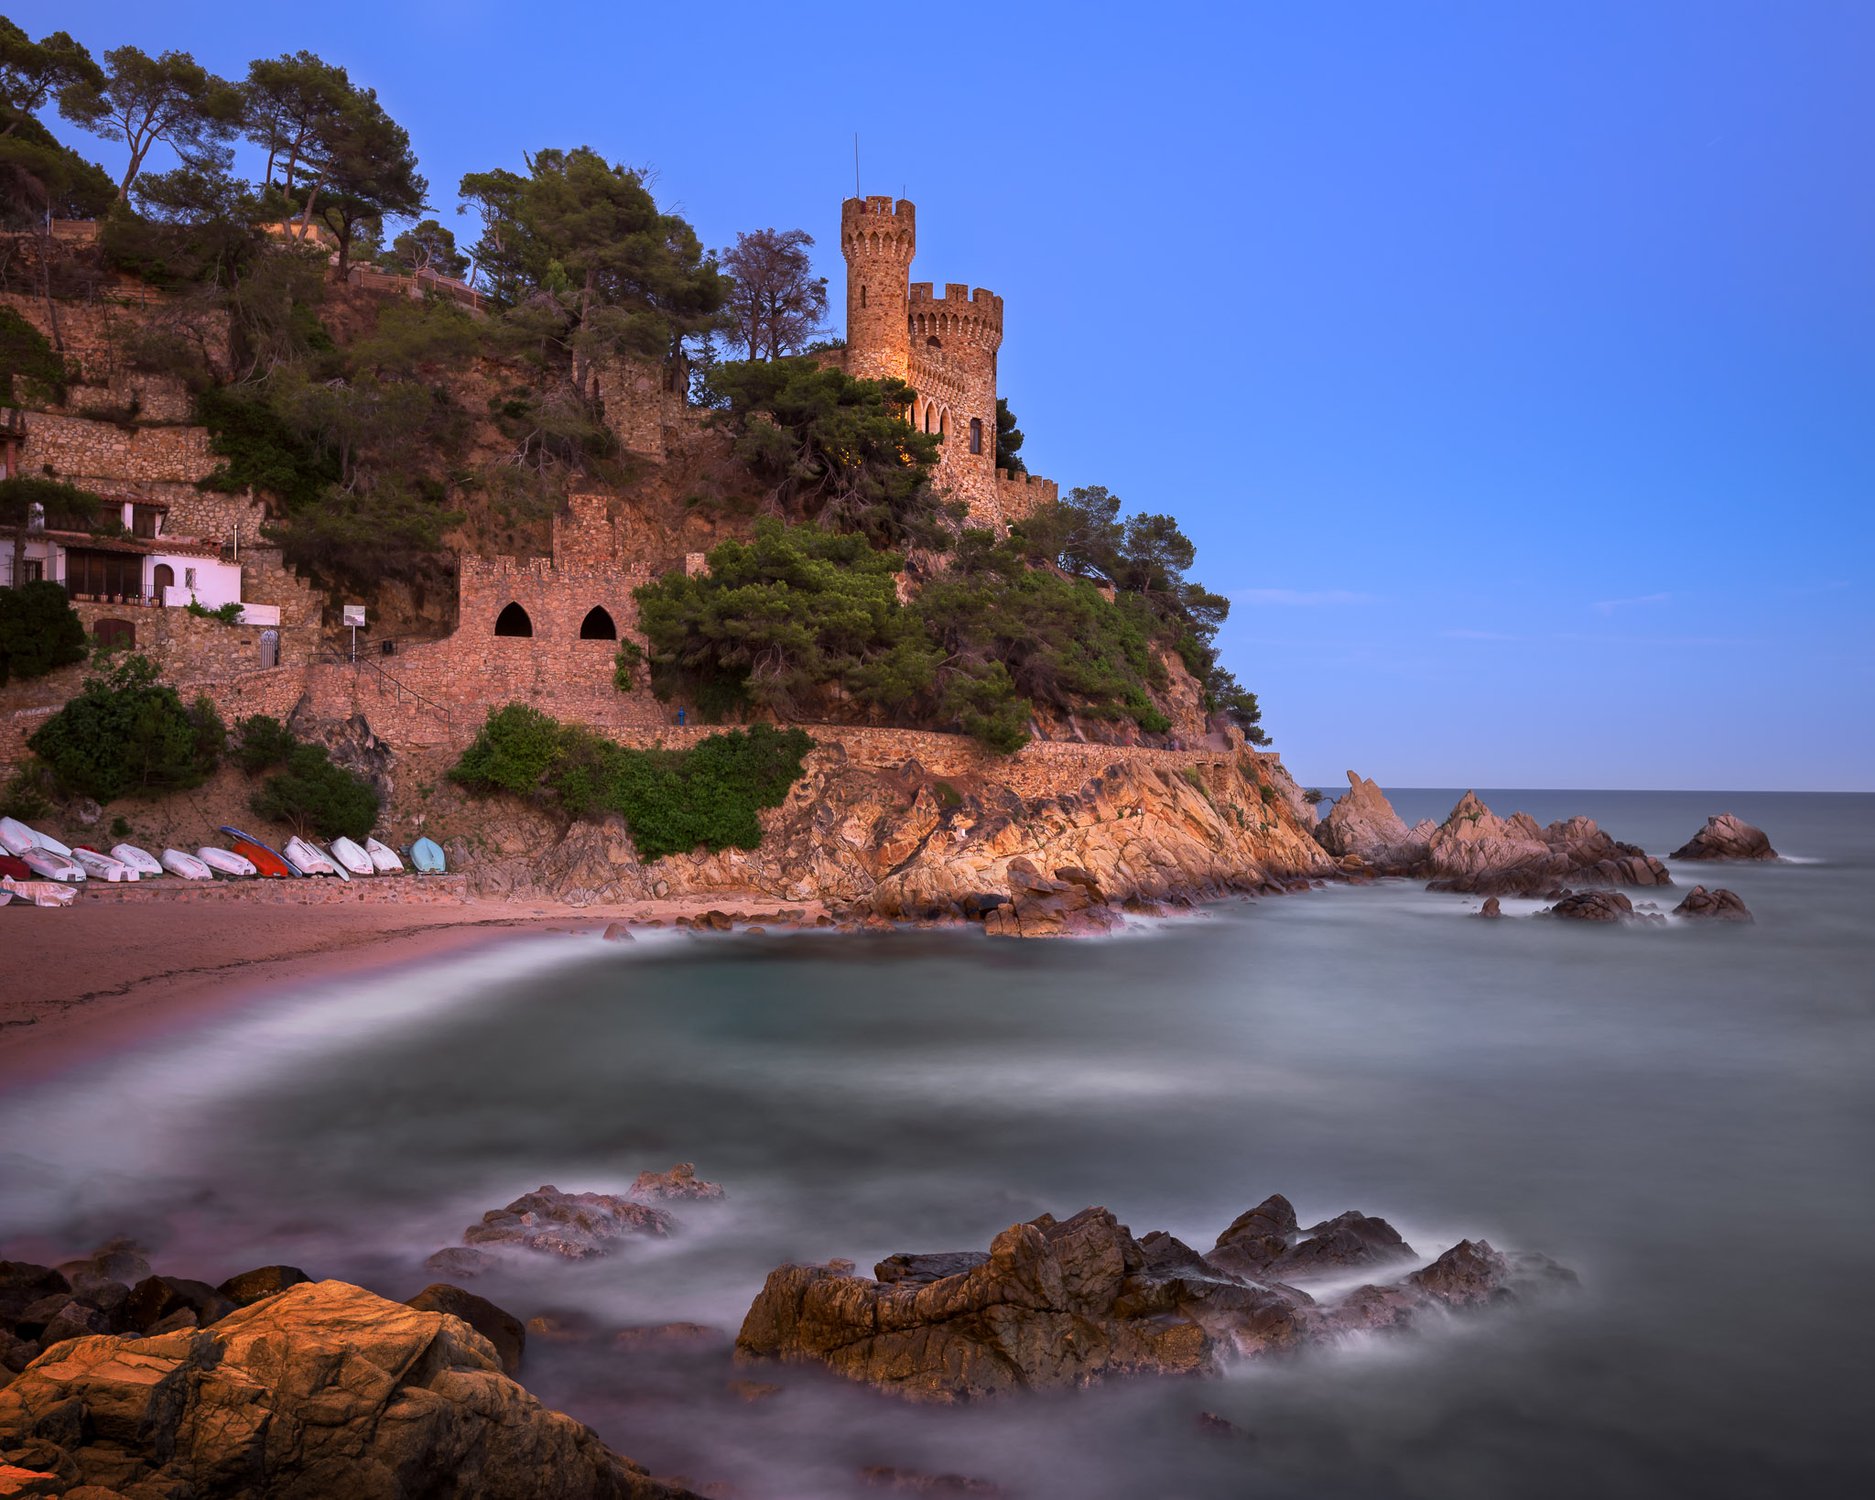 Castle on Lloret De Mar Beach